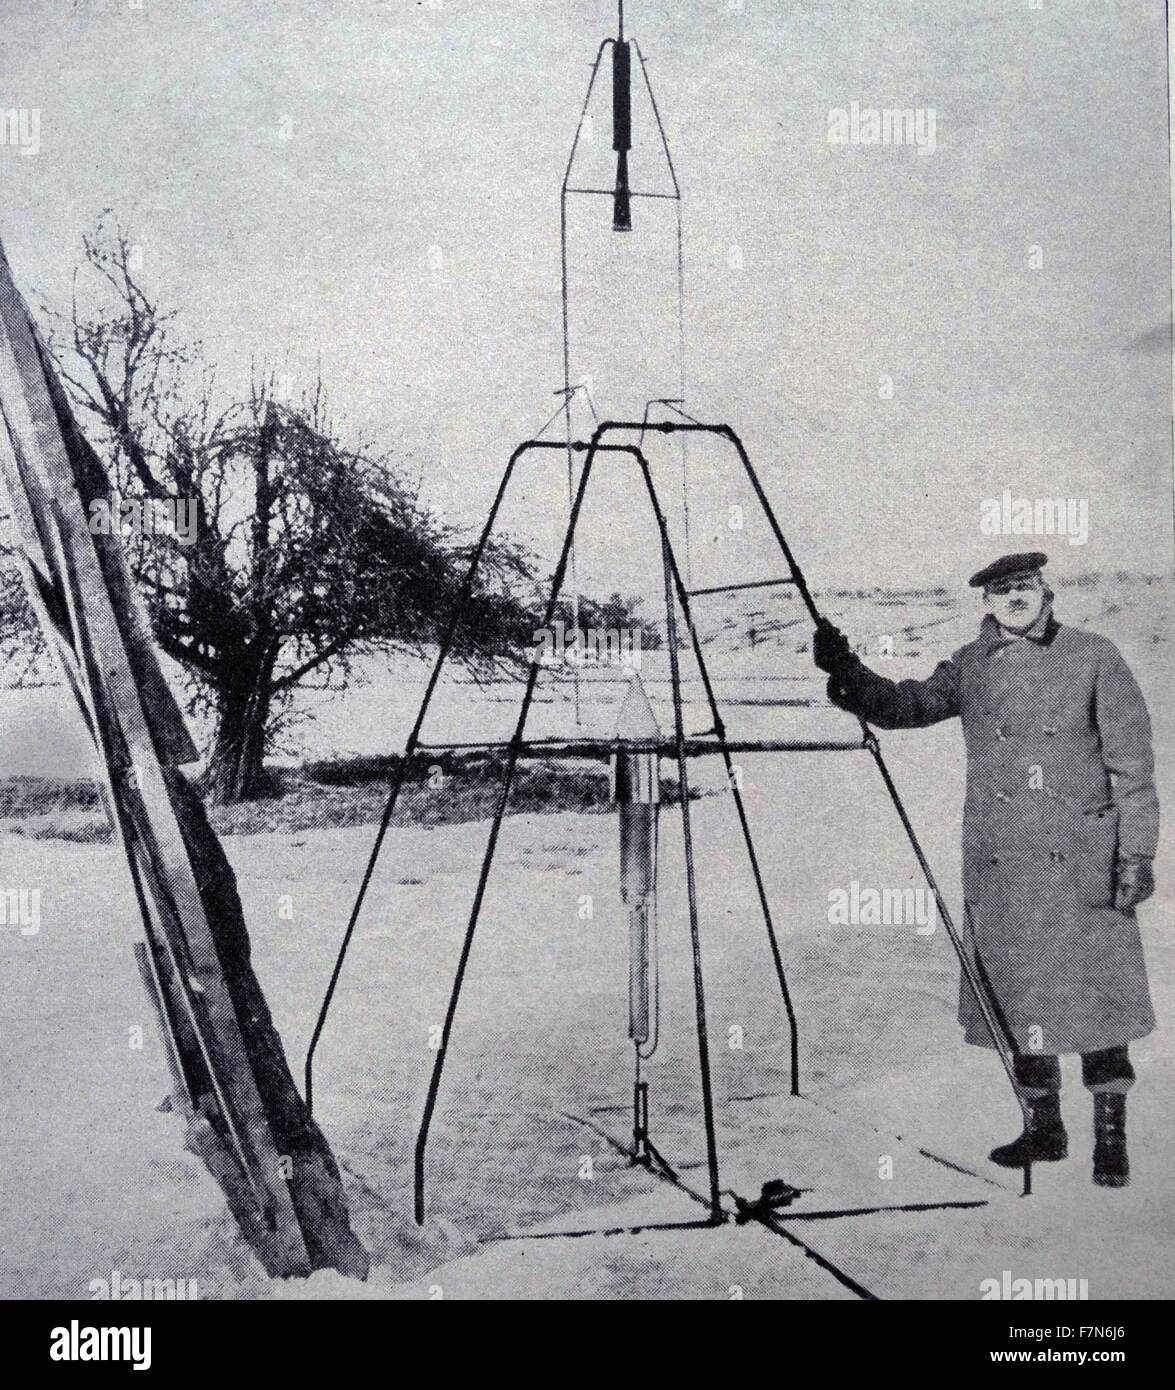 Robert Hutchings Goddard (5 ottobre 1882 - 10 agosto 1945) ingegnere americano, professore, Fisico e inventore che è accreditato con la creazione e il primo al mondo alimentato con carburante liquido a razzo, che era stata la sperimentazione per un numero di anni con razzi, ha lanciato il primo al mondo a liquido a propulsione a razzo, che è mostrata qui. Copre una distanza di 184 m a una velocità media di 64 mph Foto Stock